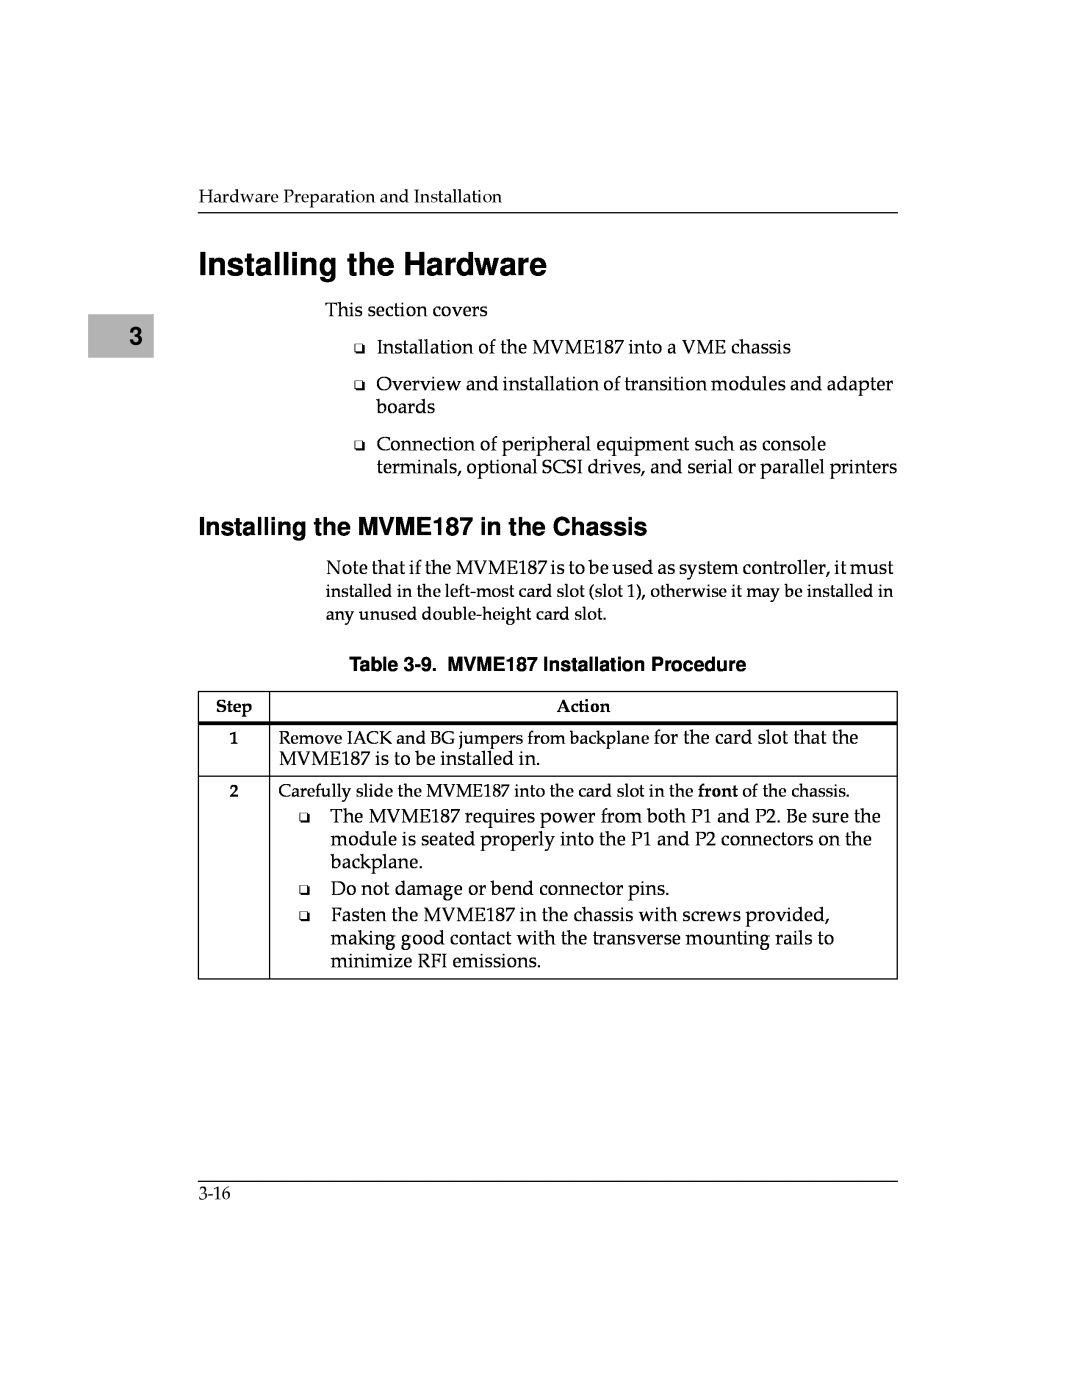 Motorola manual Installing the Hardware, Installing the MVME187 in the Chassis, 9. MVME187 Installation Procedure 